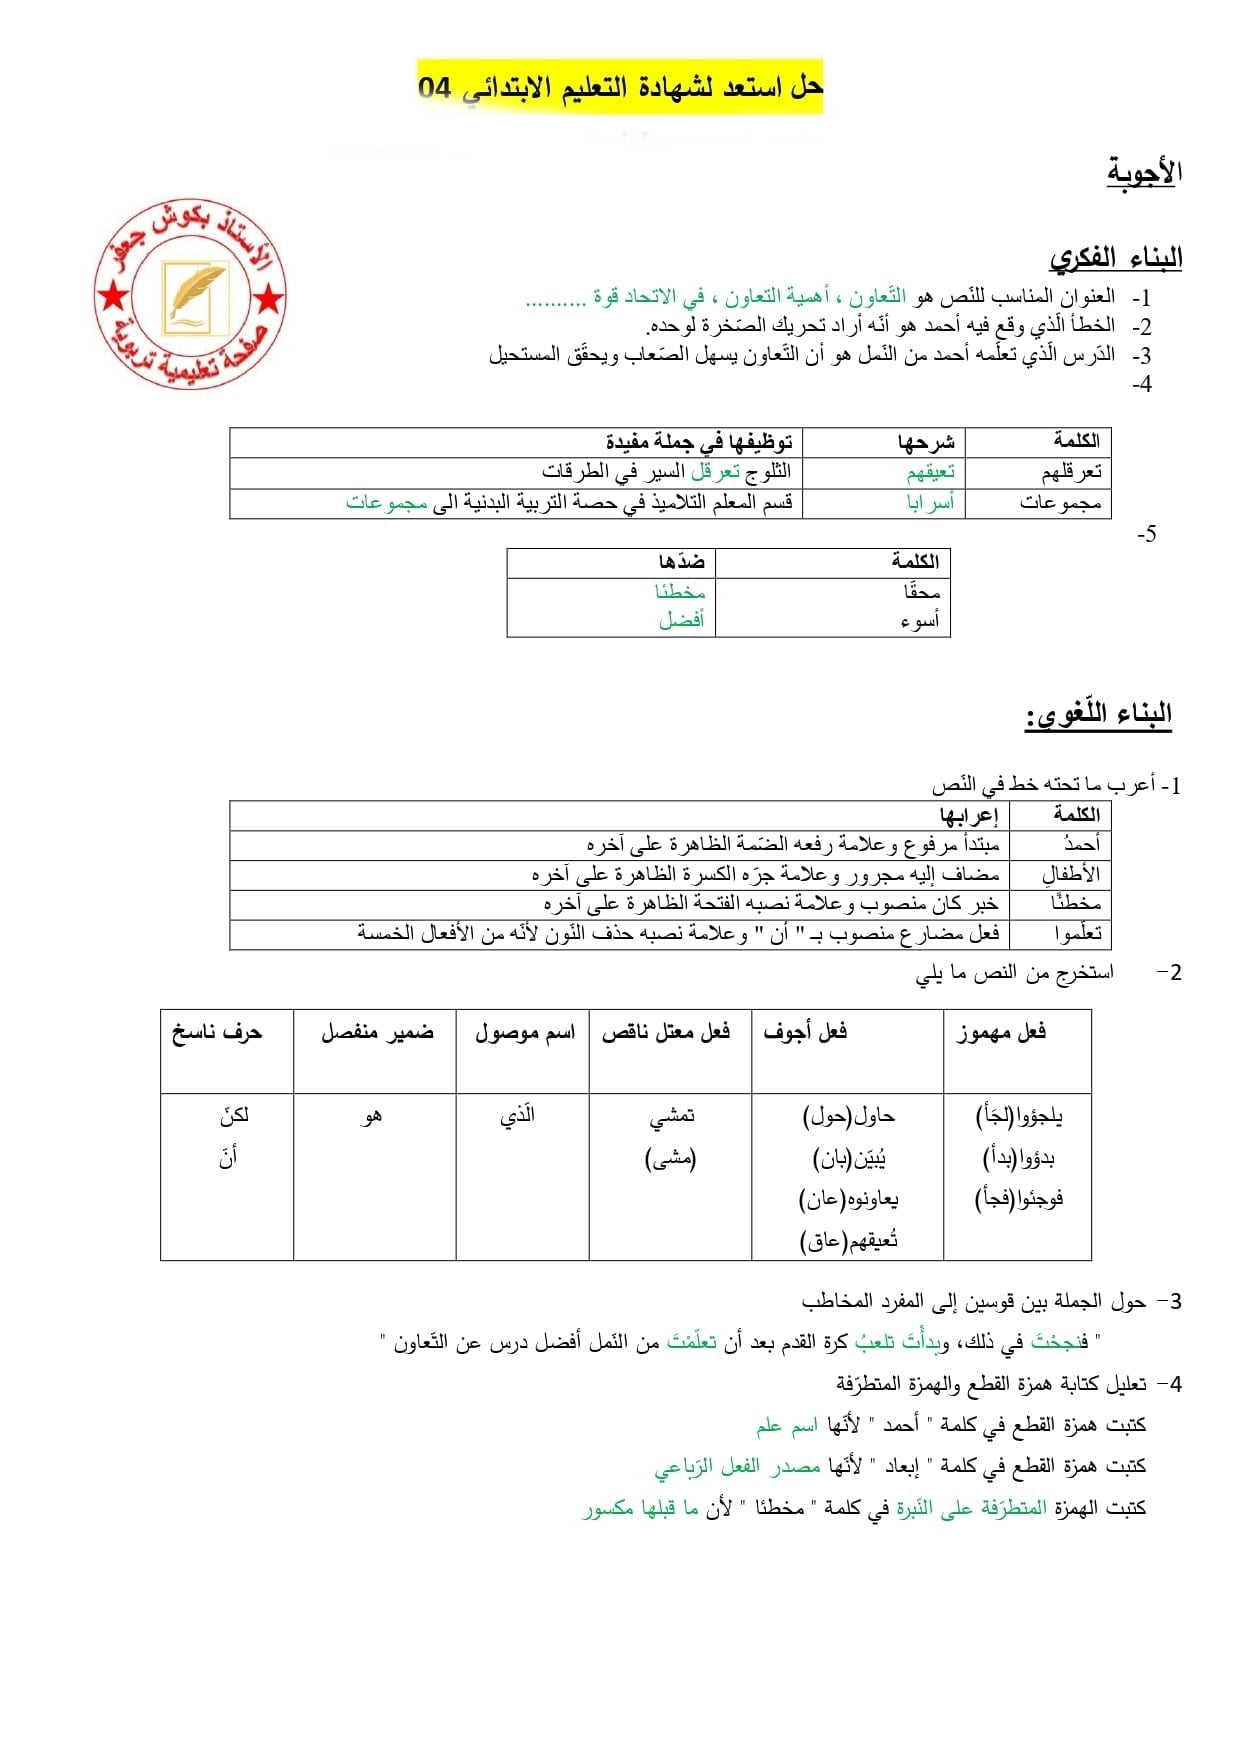 الموضوع التجريبي رقم 6 في اللغة العربية مع الاجابة لشهادة التعليم الابتدائي 2021 2